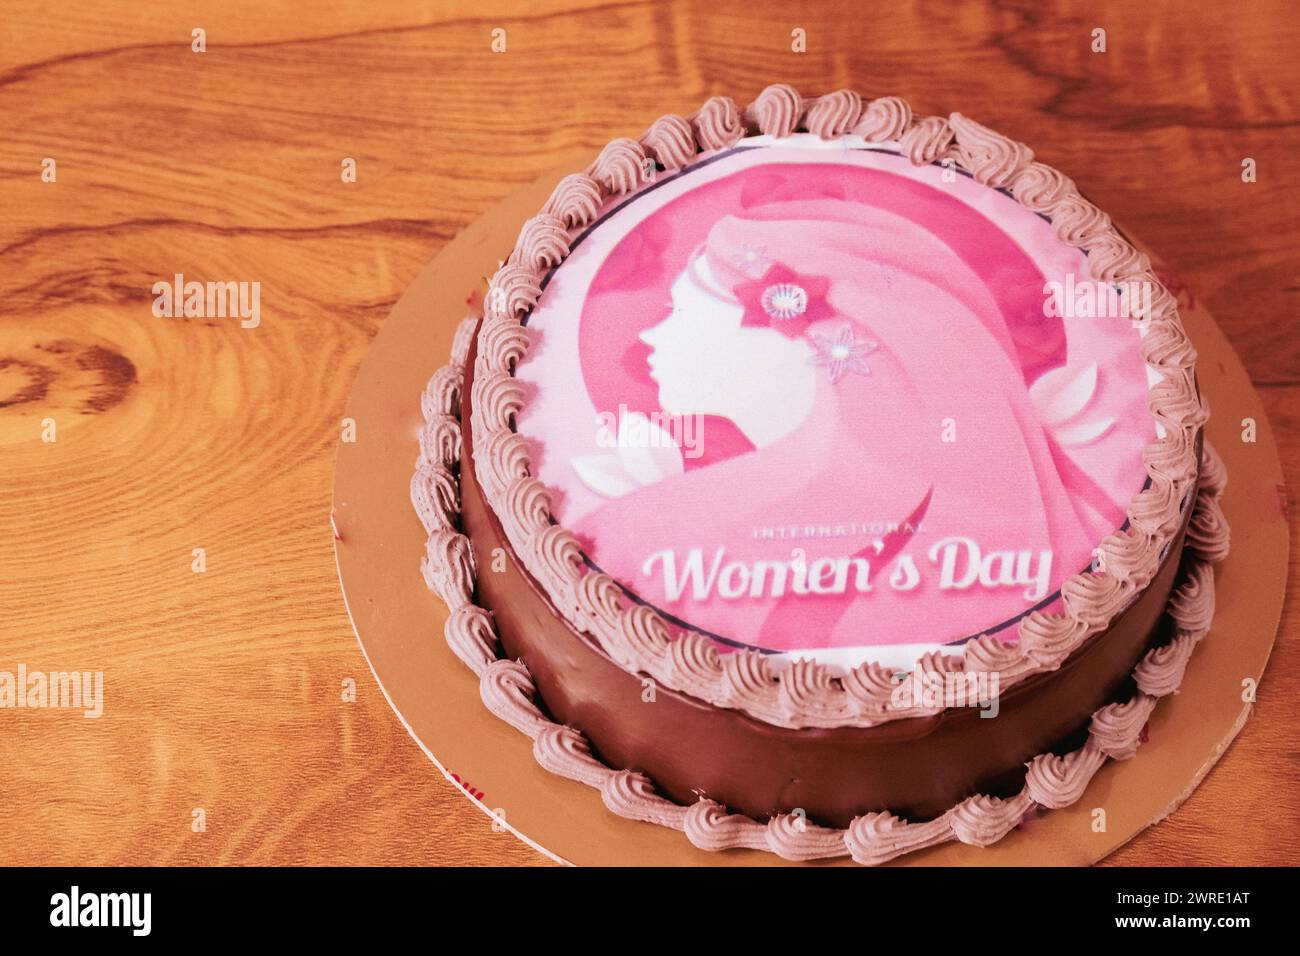 Gâteau du 8 mars. Journée internationale de la femme. Gâteau rose. La Journée internationale de la femme est célébrée le 8 mars dans le monde entier. Espace de copie, mise au point sélective. Banque D'Images